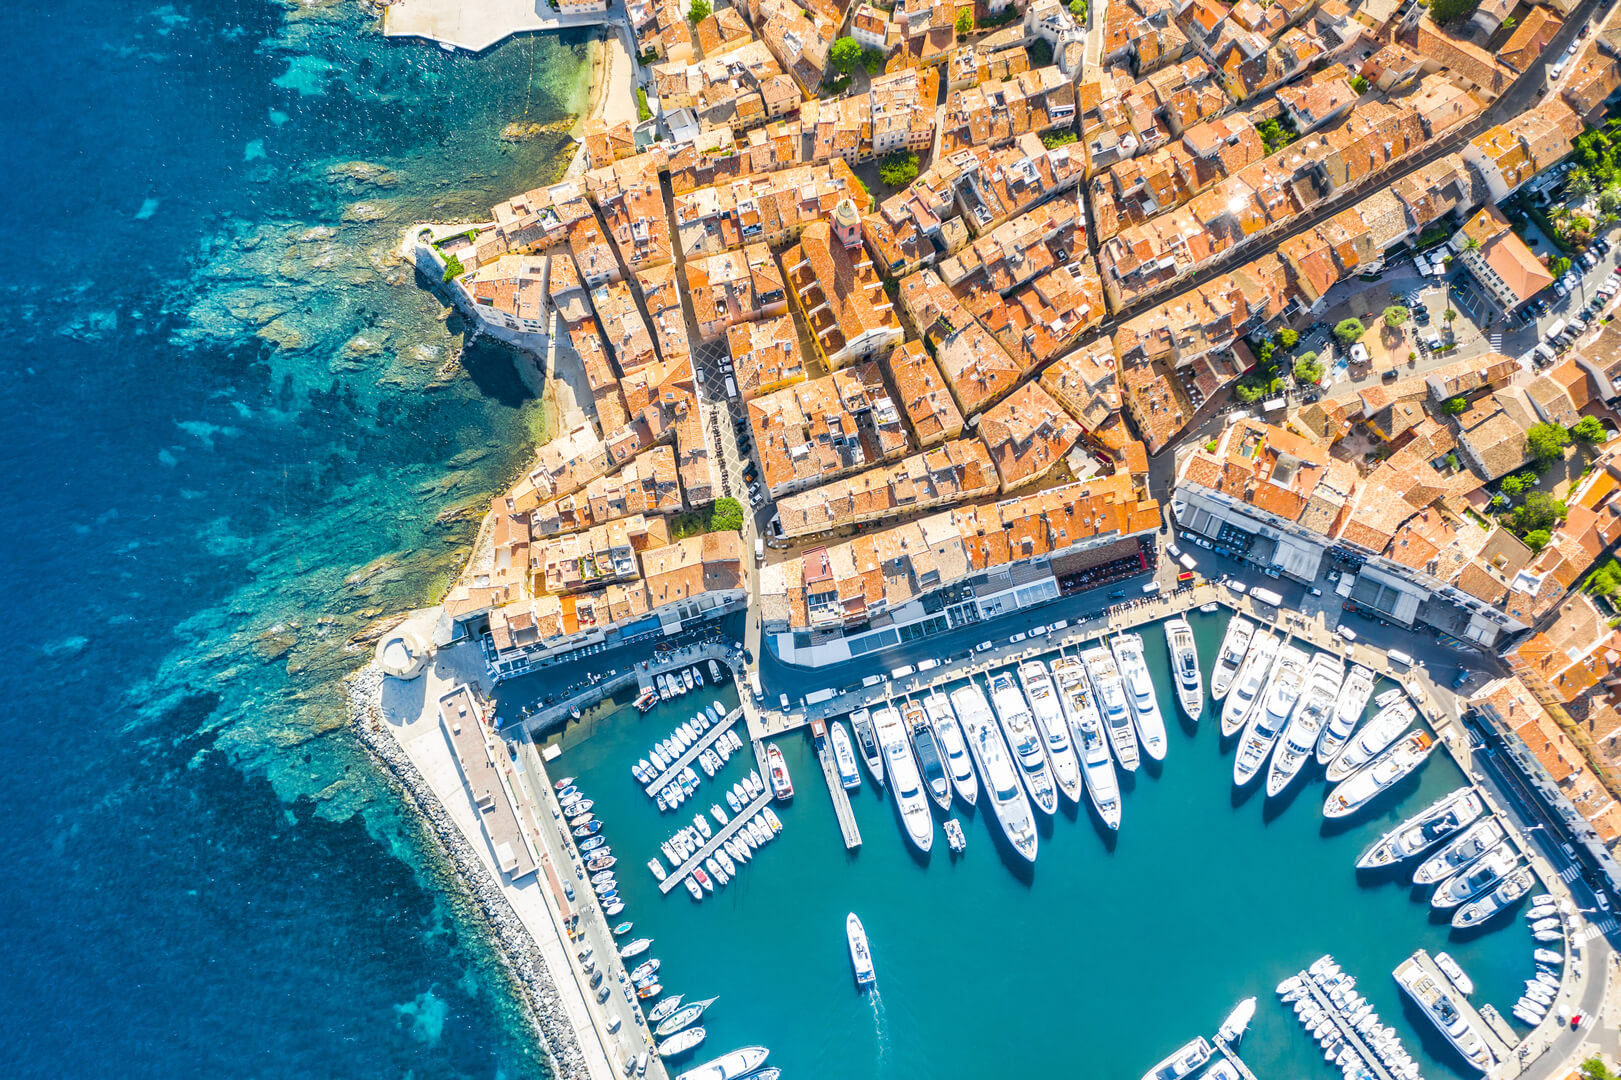 Vue de la ville de Saint-Tropez, Provence, Côte d'Azur, destination populaire pour les voyages en Europe.